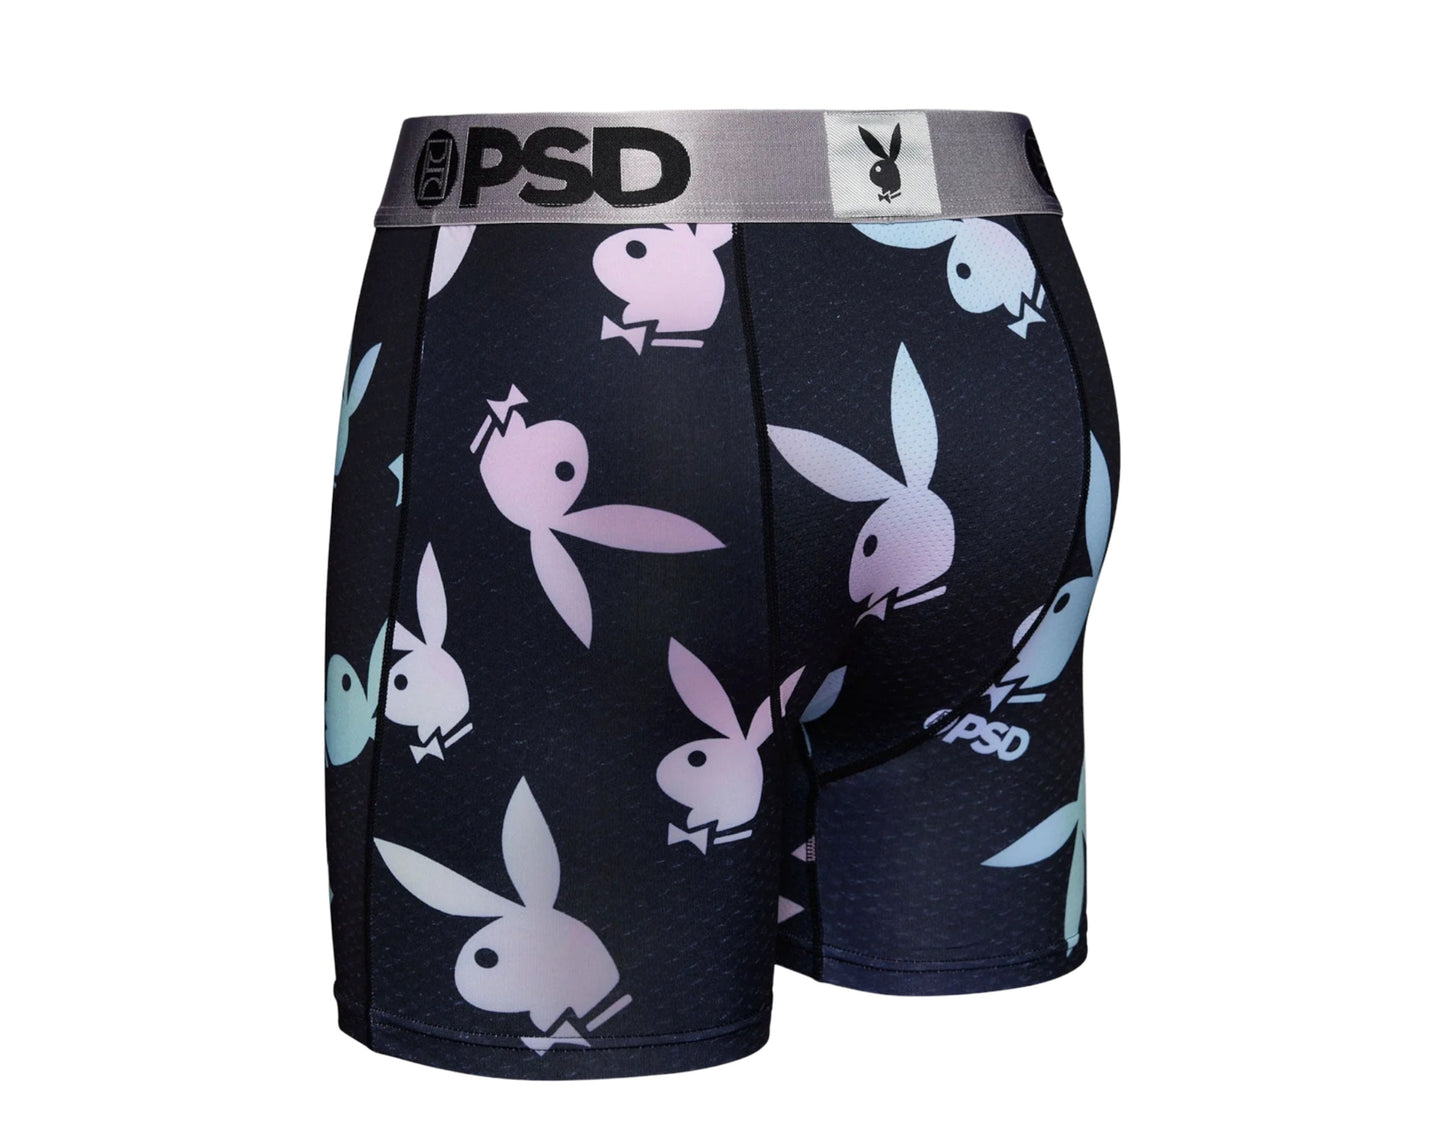 PSD x Playboy - Glow Briefs Men's Underwear